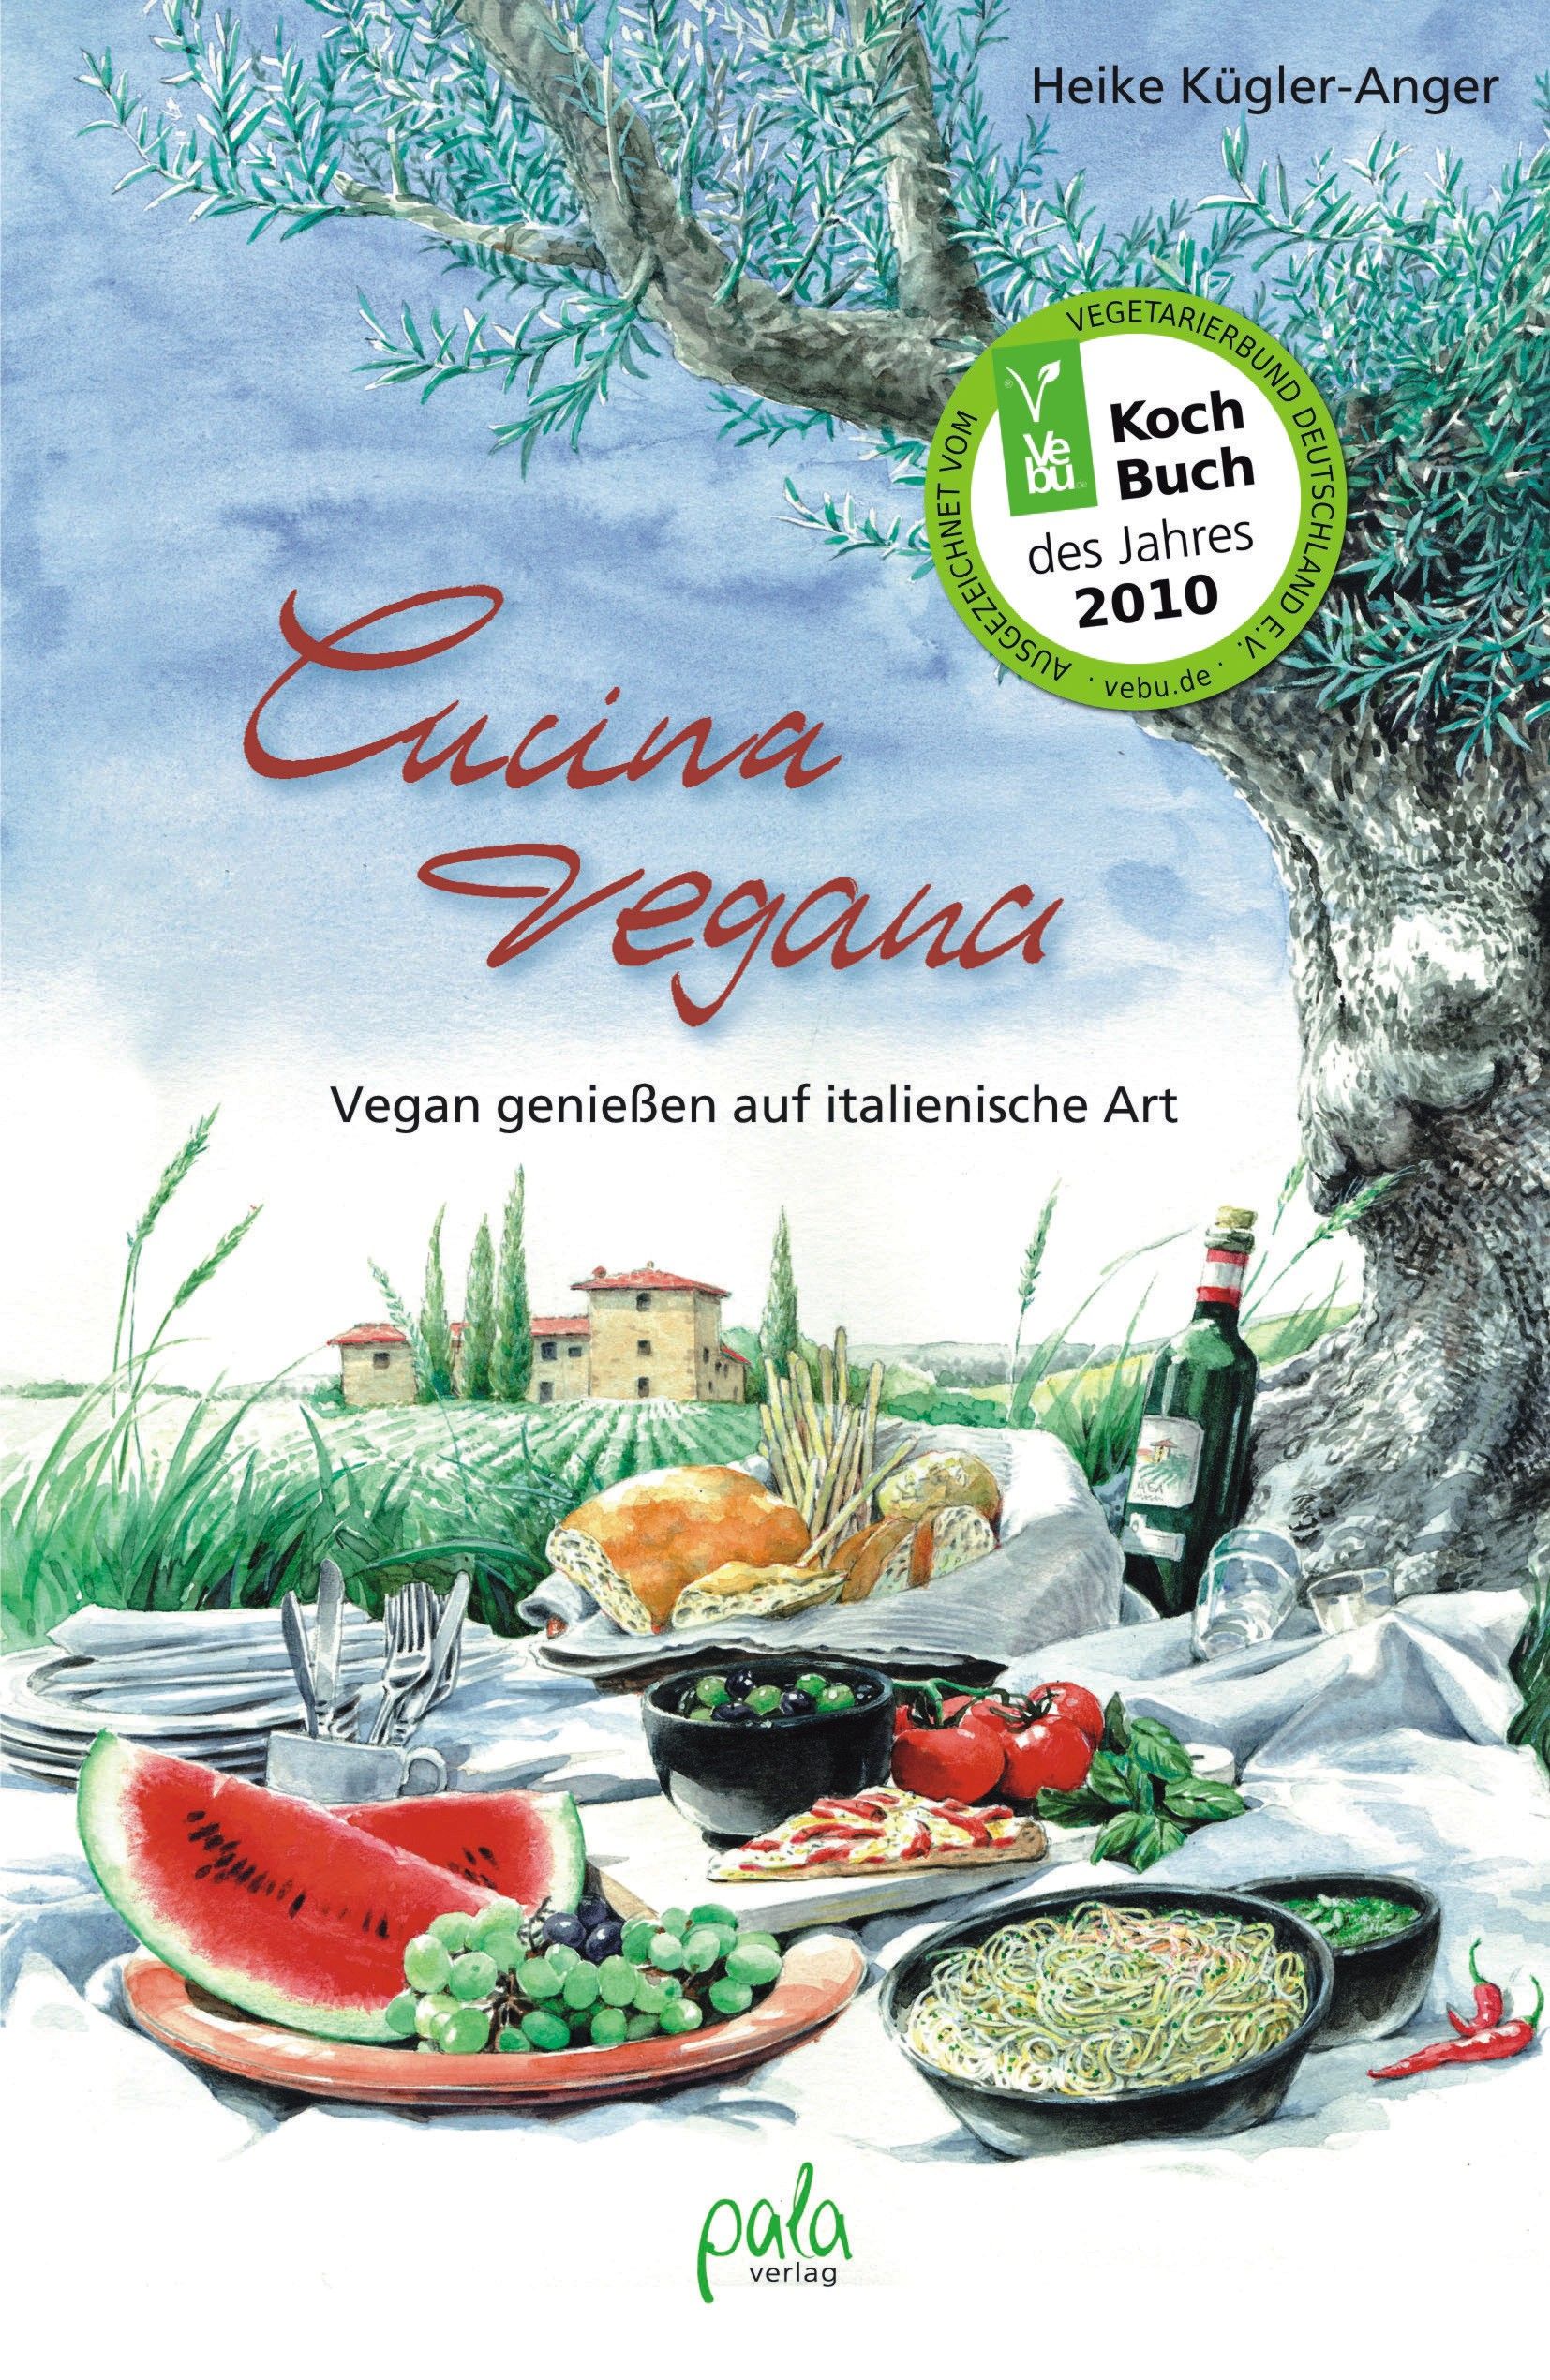 Cucina vegana